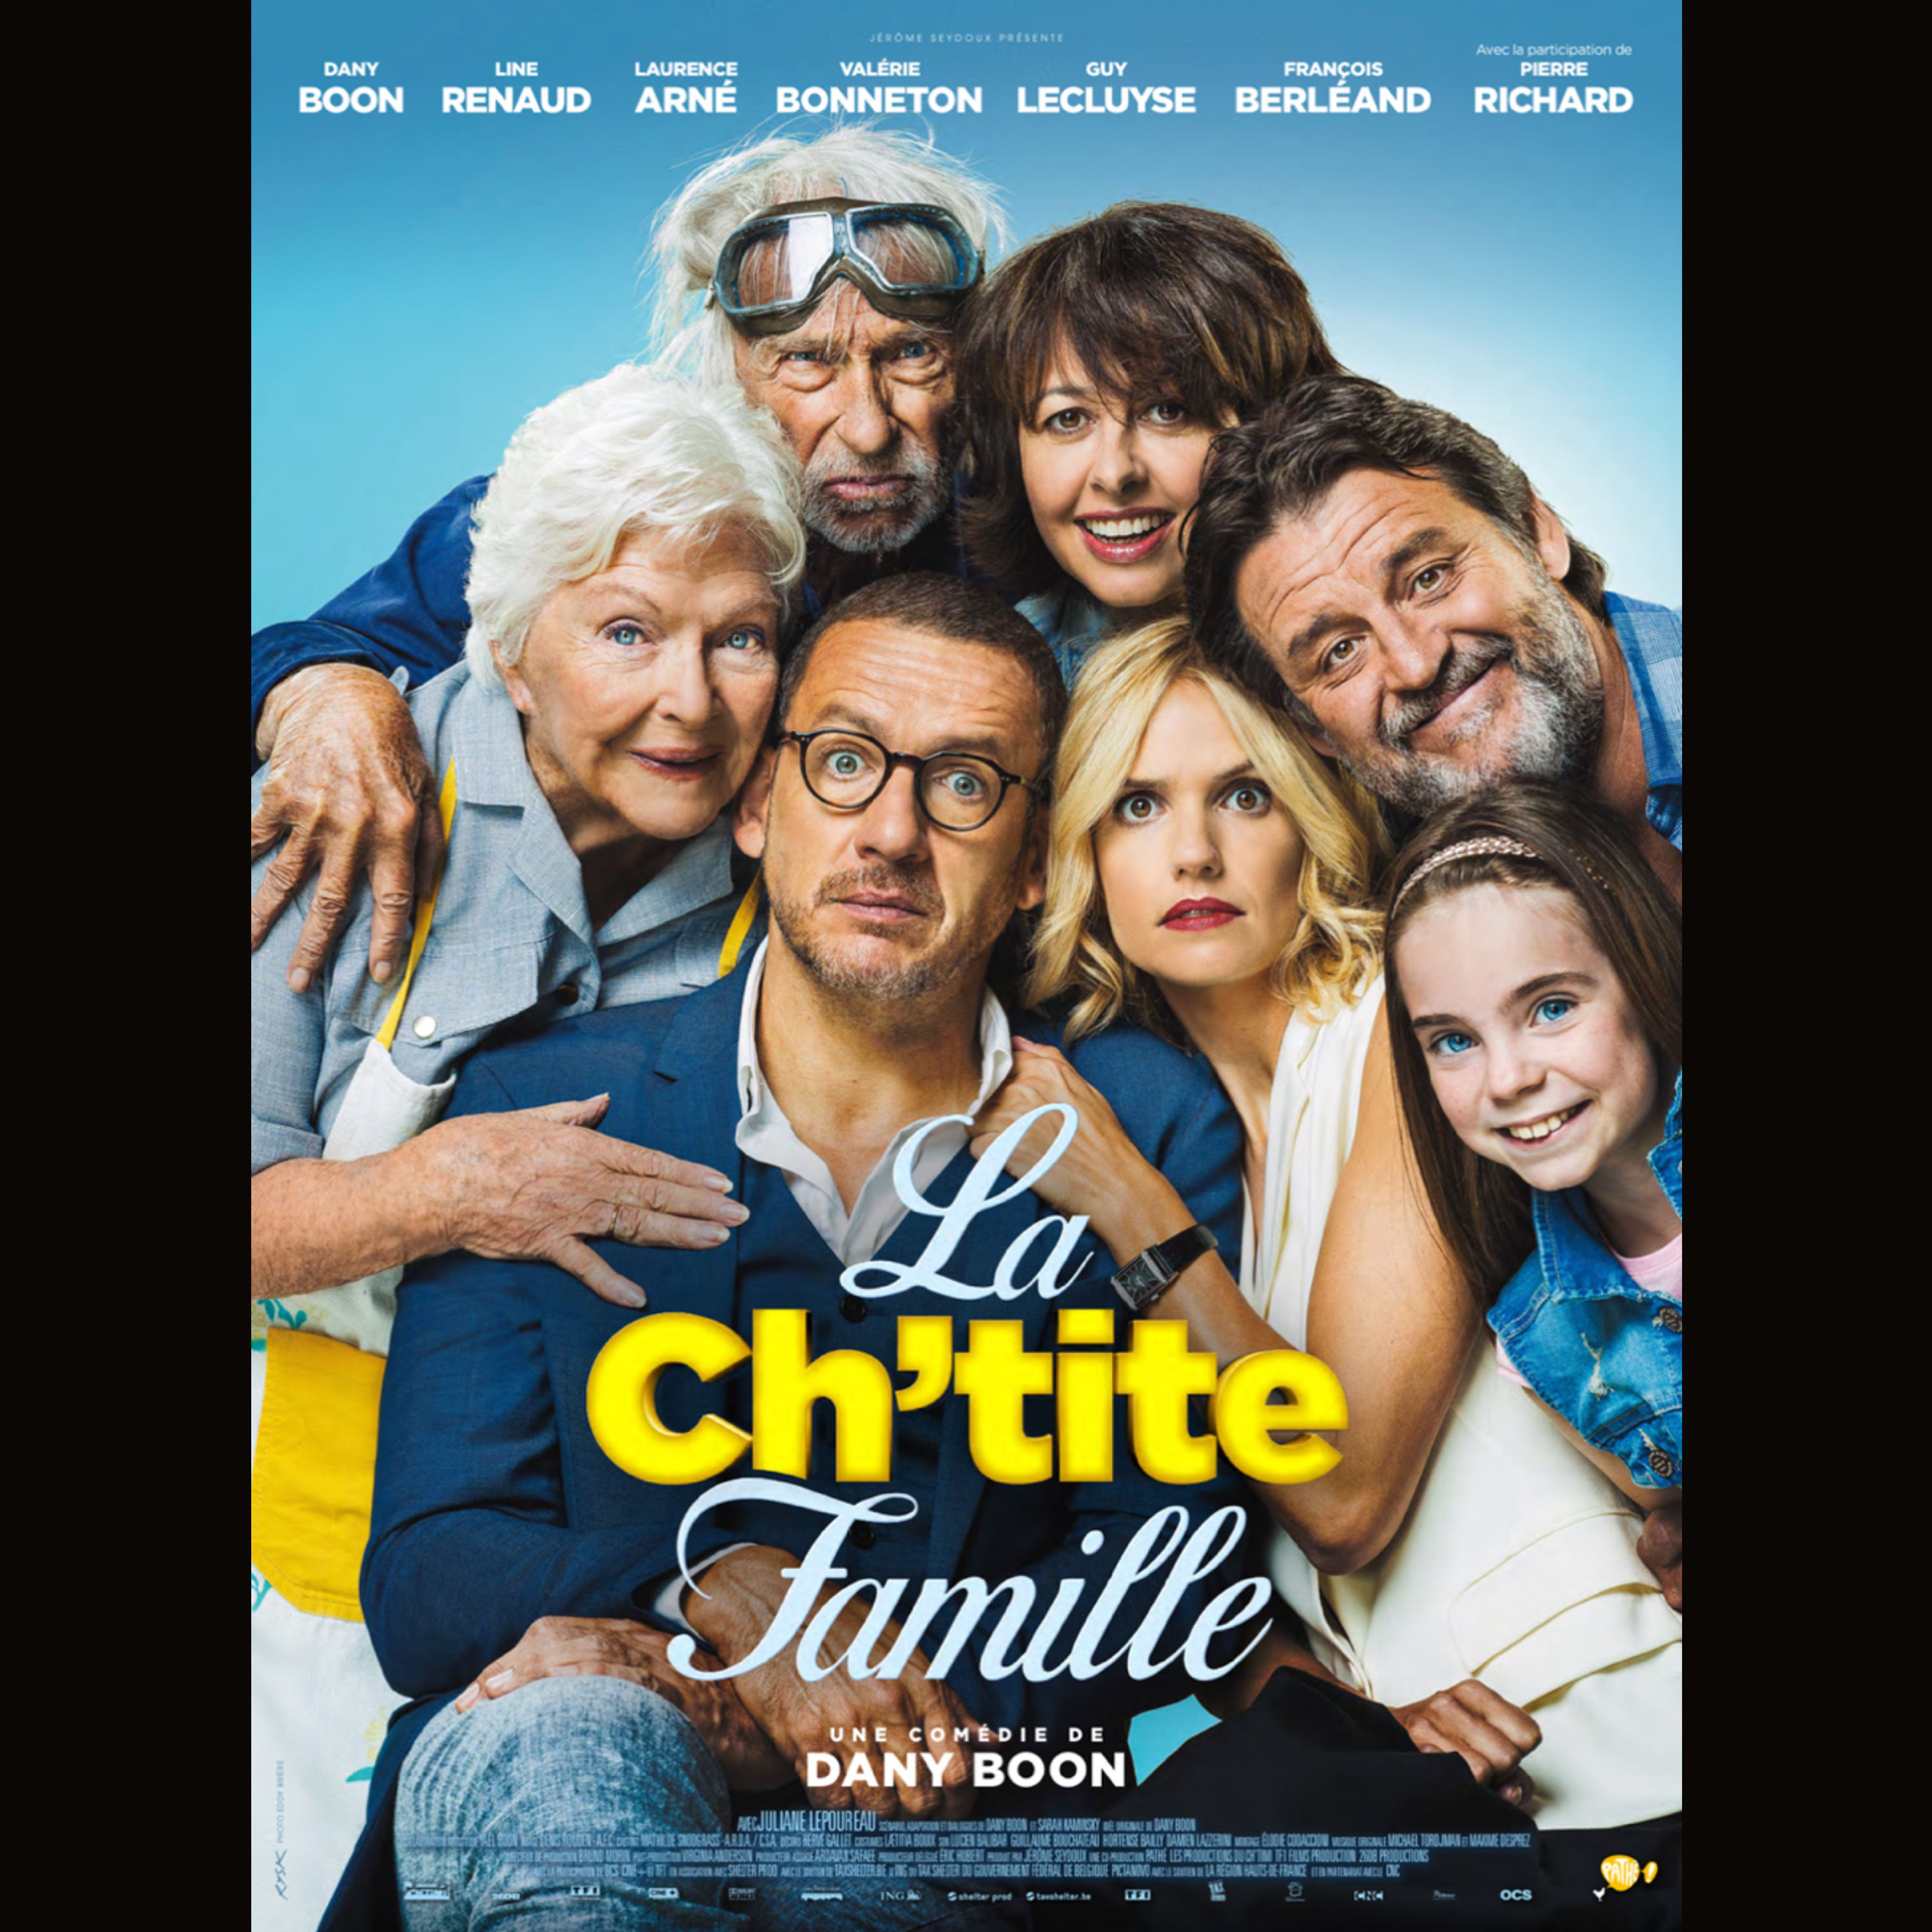 Семейные комедии новинки. От семьи не убежишь / la Ch'tite famille (2018). Лоранс Арне от семьи не убежишь. Пьер Ришар от семьи не убежишь.